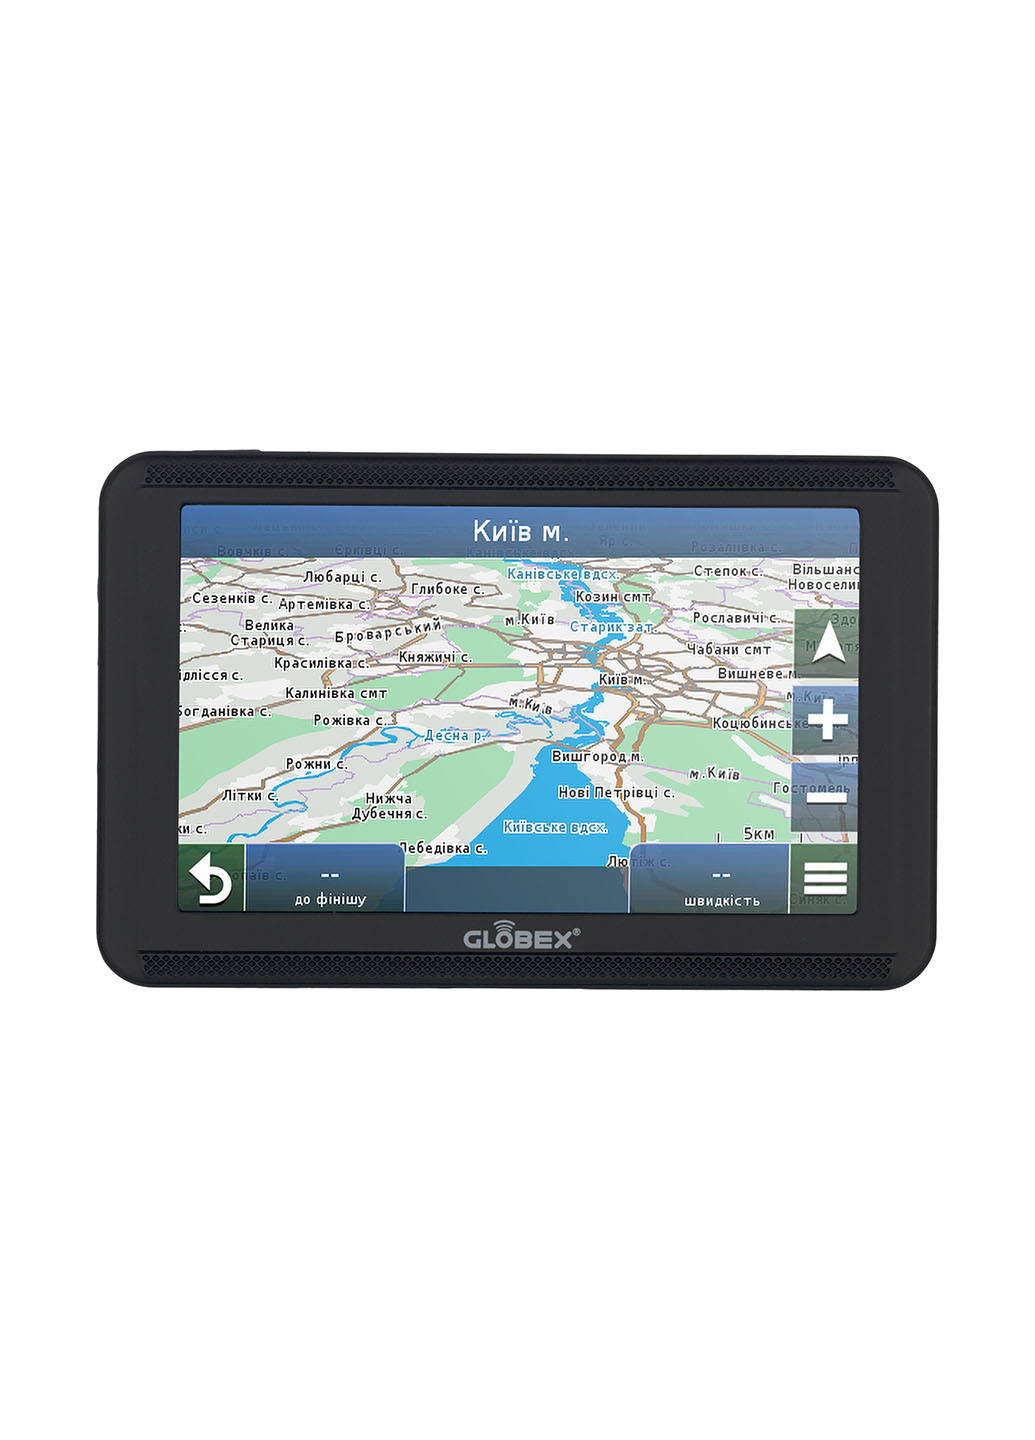 Автомобільний GPS навігатор GE520 Навлюкс Globex ge520 + navlux (174156028)